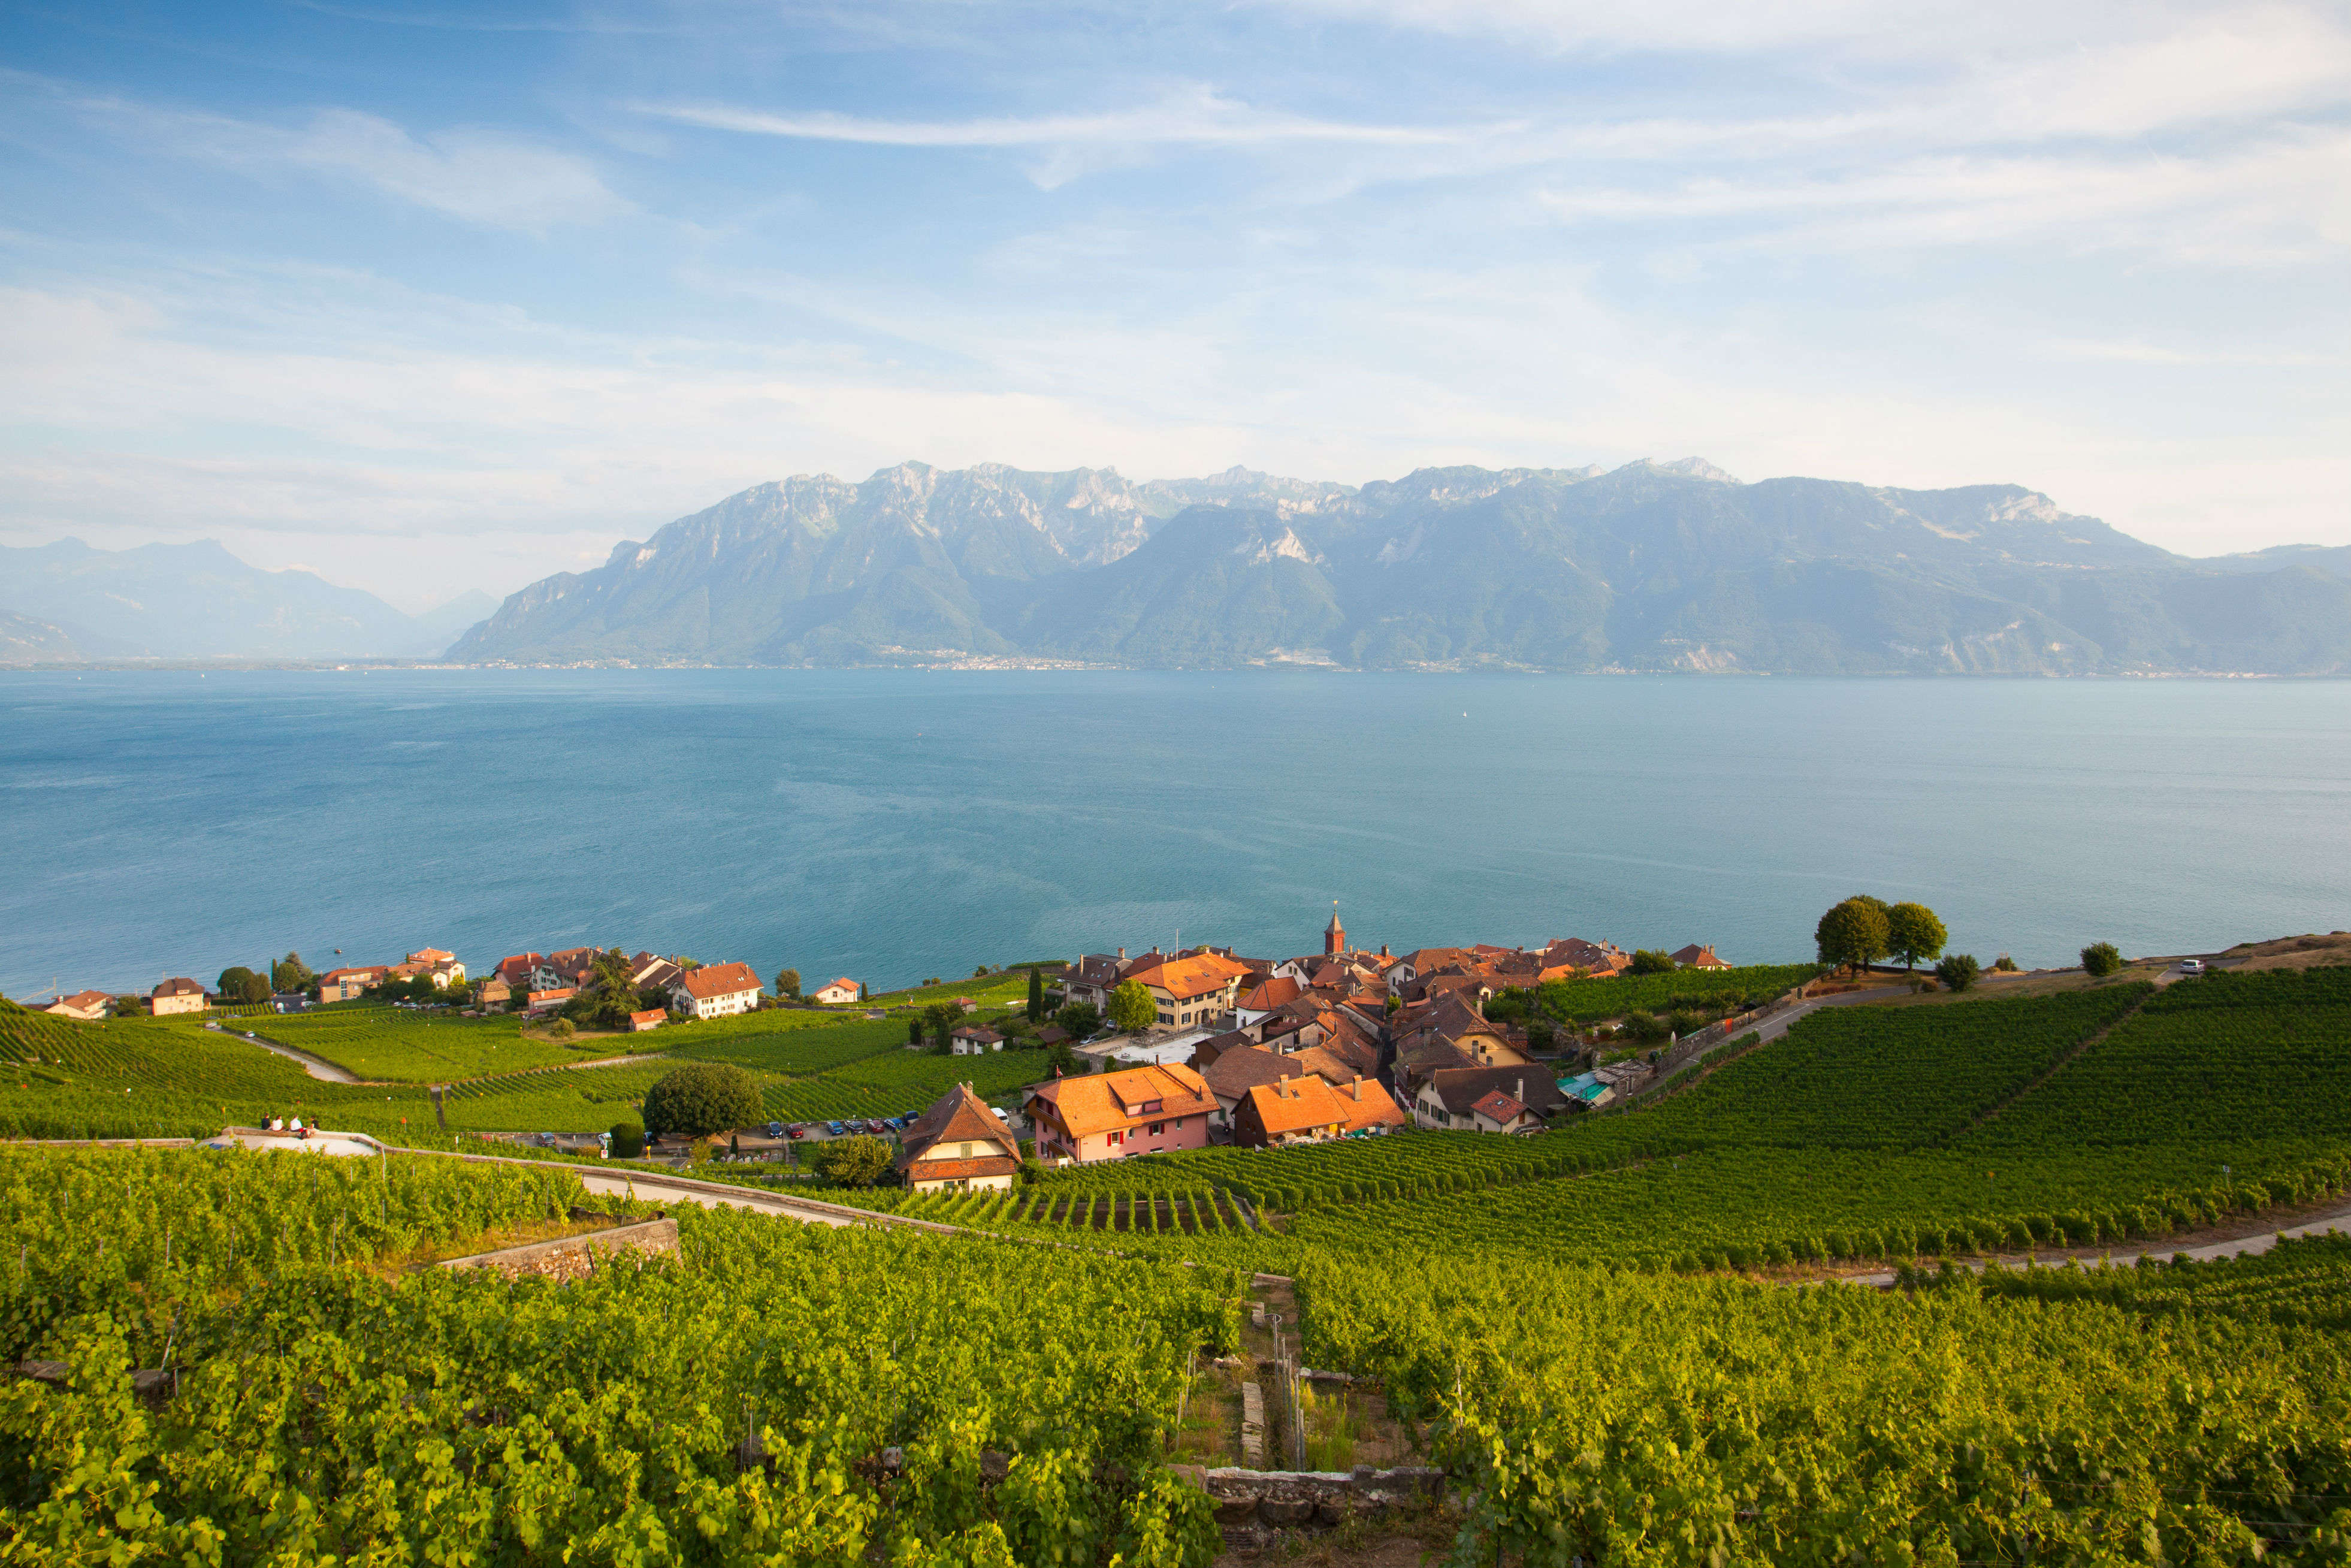 Festival of Winegrowers—Swiss wine festival is back after twenty years